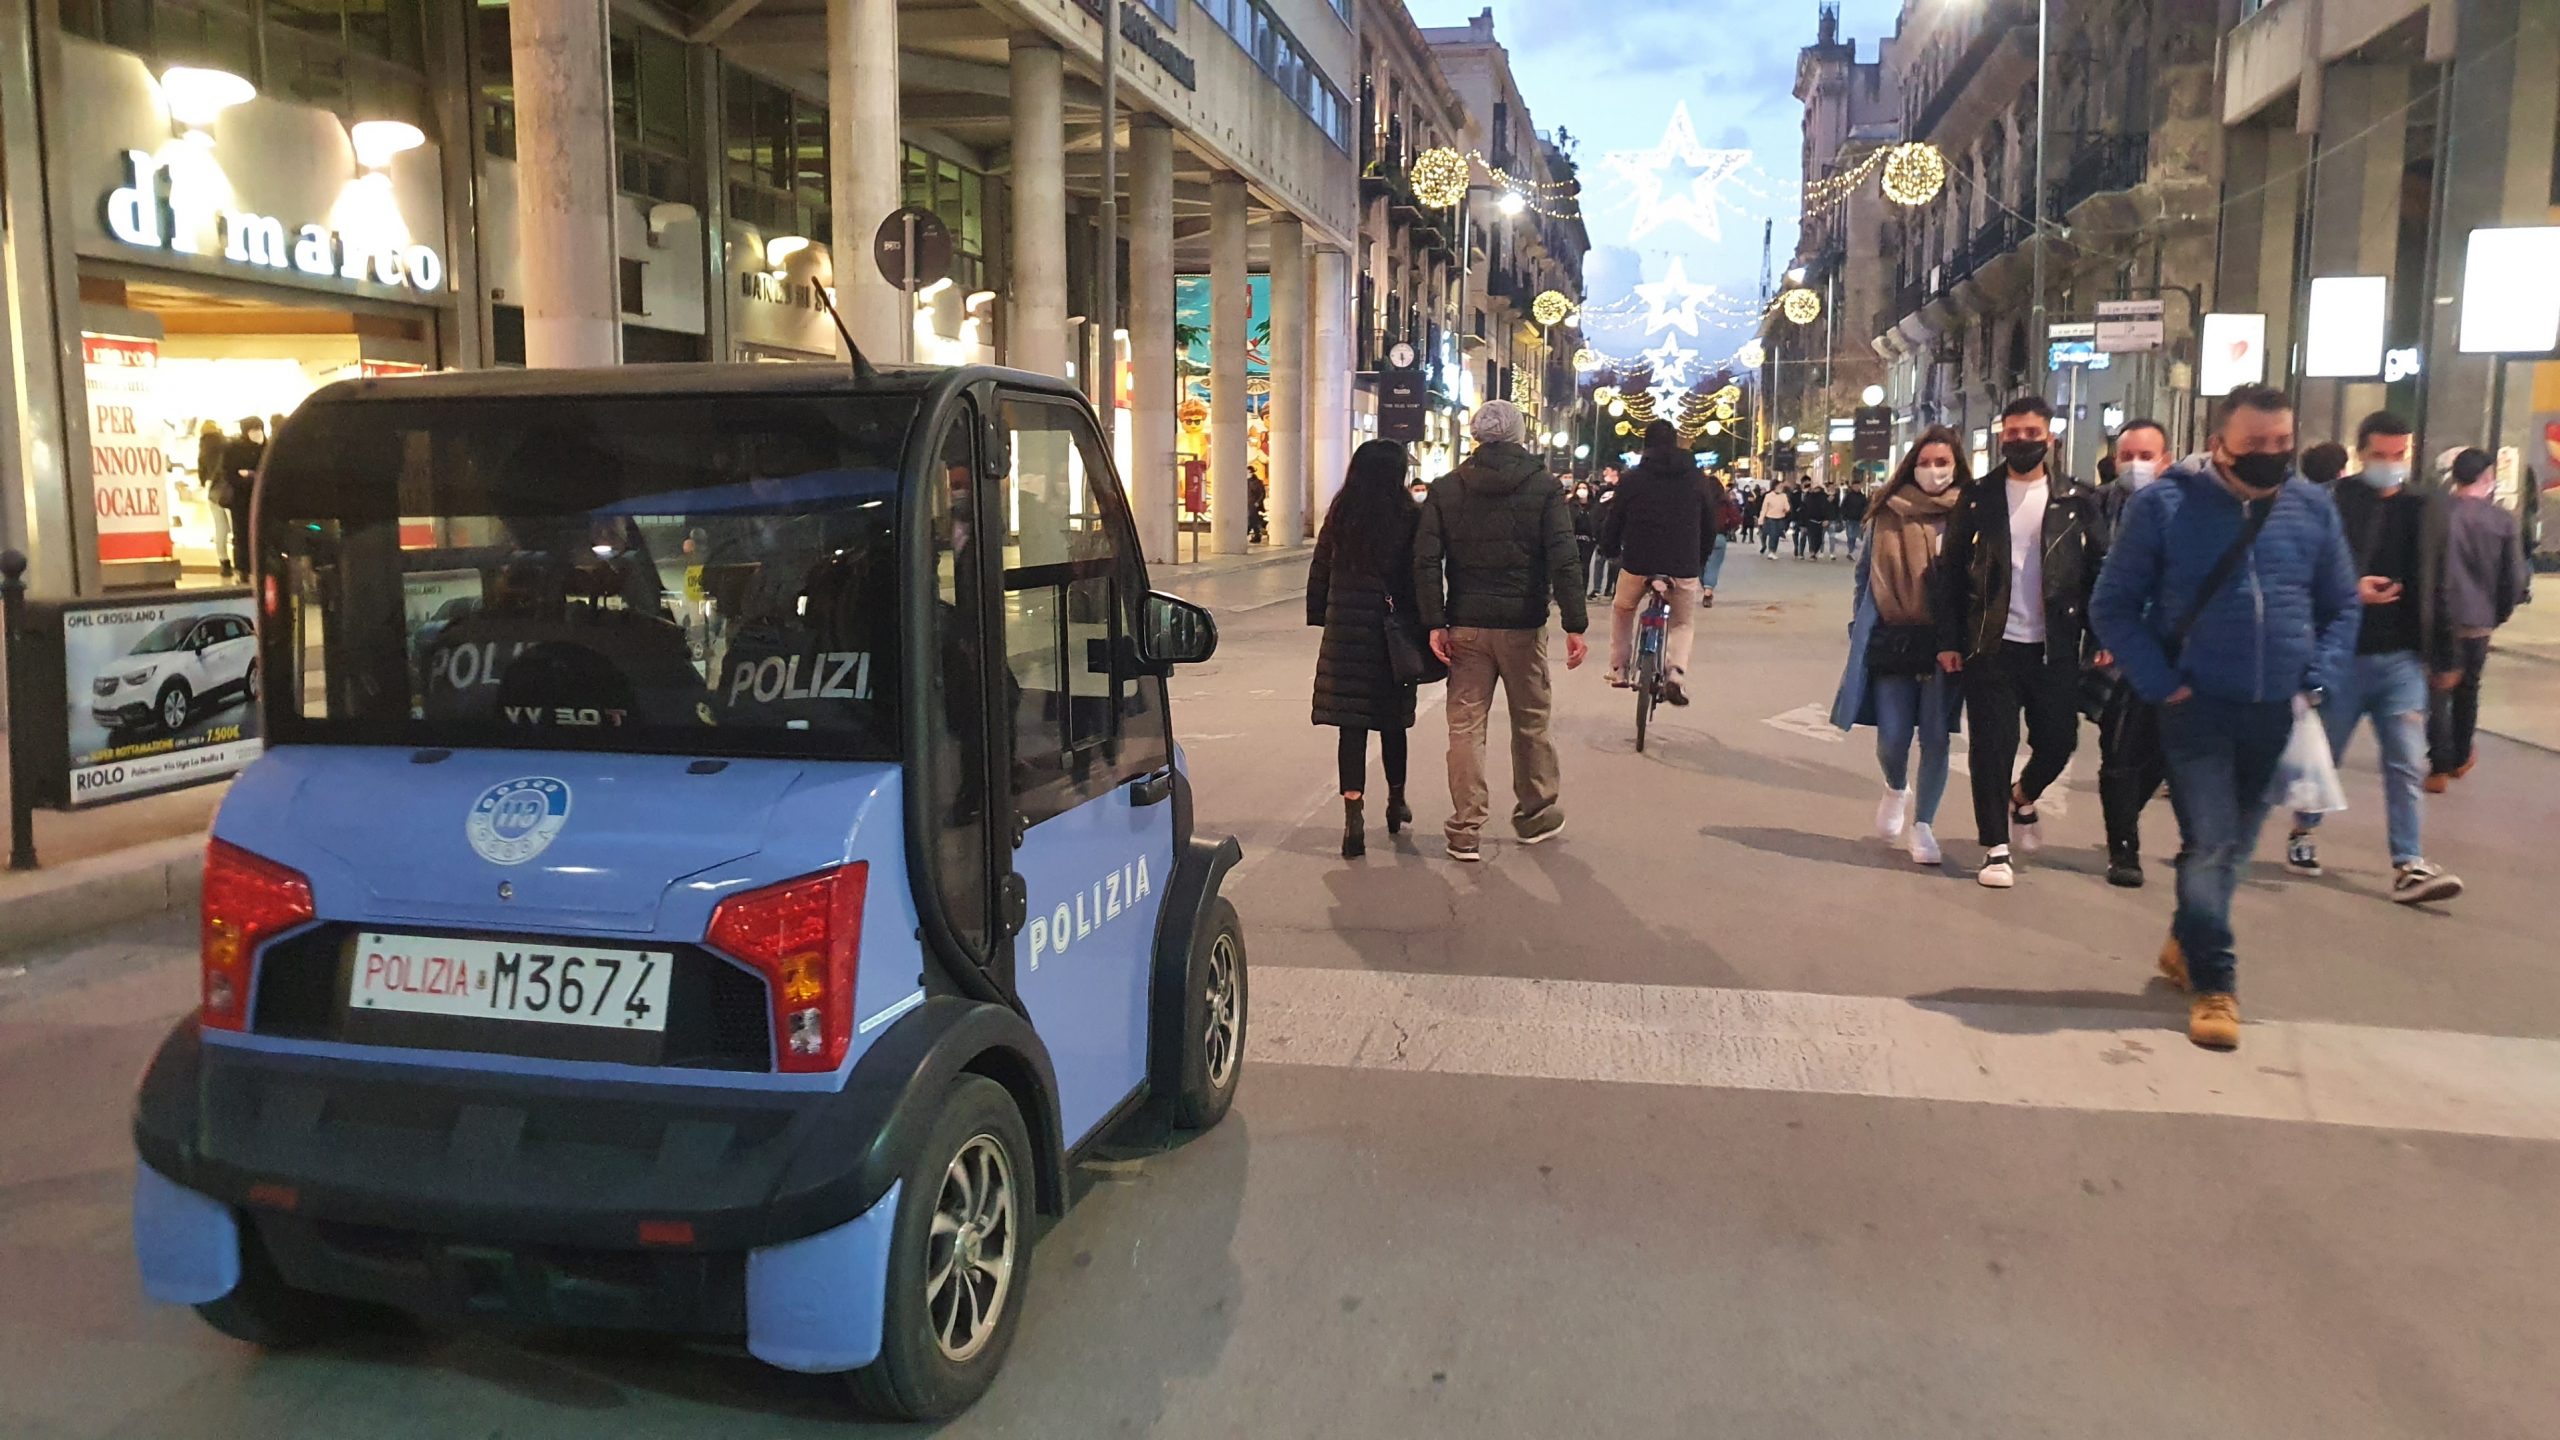 passeggiate, negozi, assembramenti, via Ruggiero Settimo, polizia, micro car elettrica